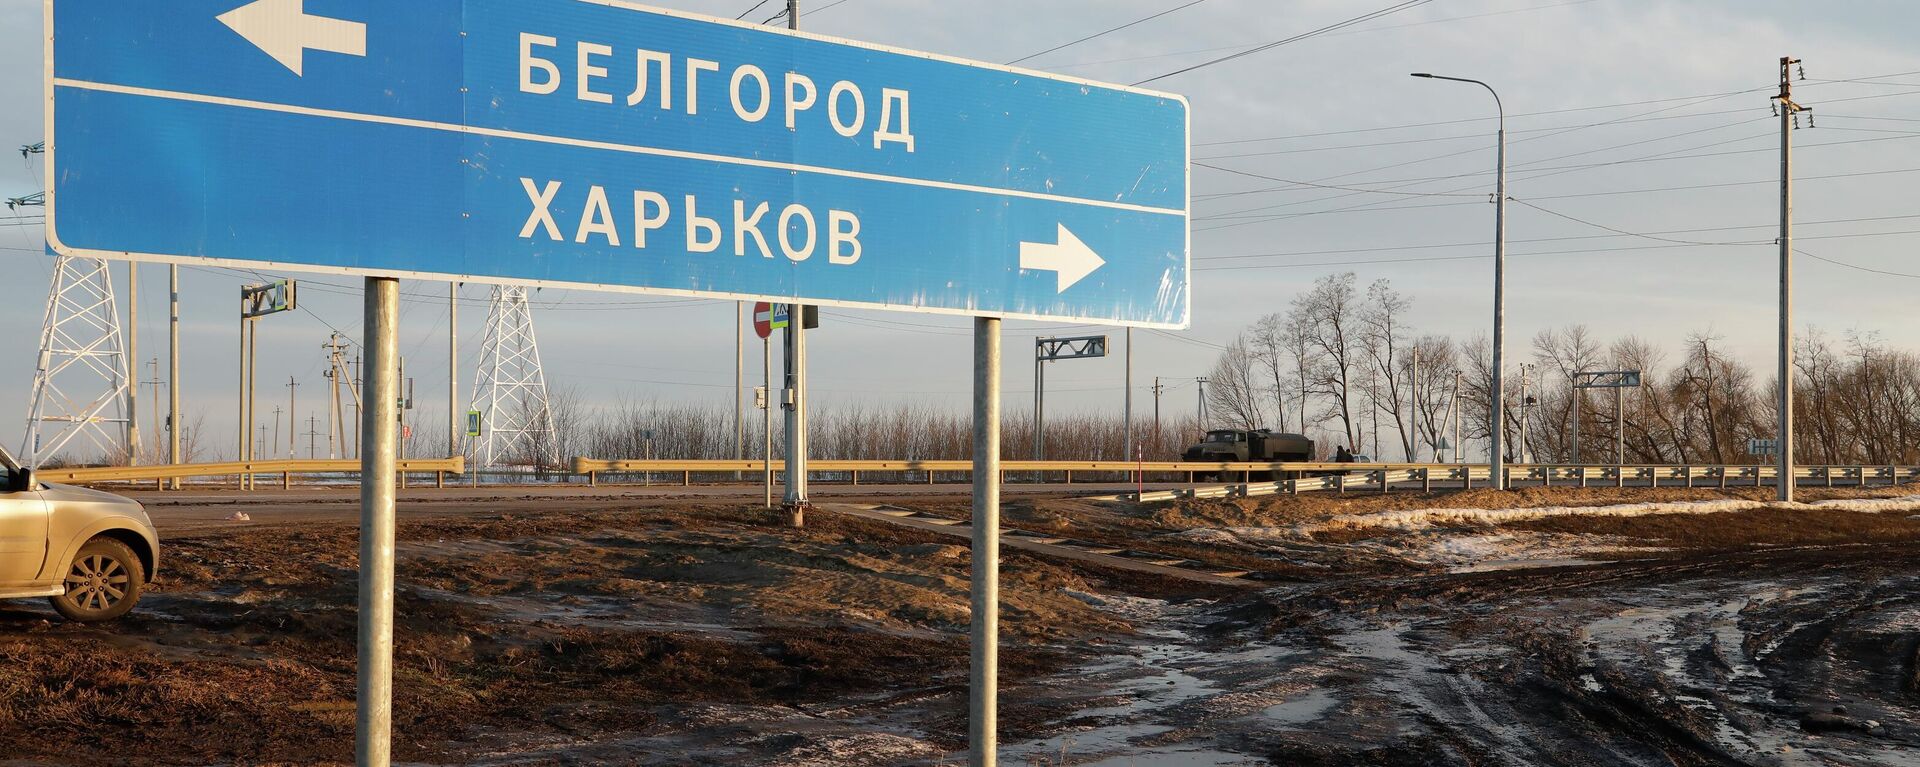 Placa rodoviária apontando para Belgorod, na Rússia (à esquerda), e Carcóvia, na Ucrânia (à direita). - Sputnik Brasil, 1920, 05.05.2022